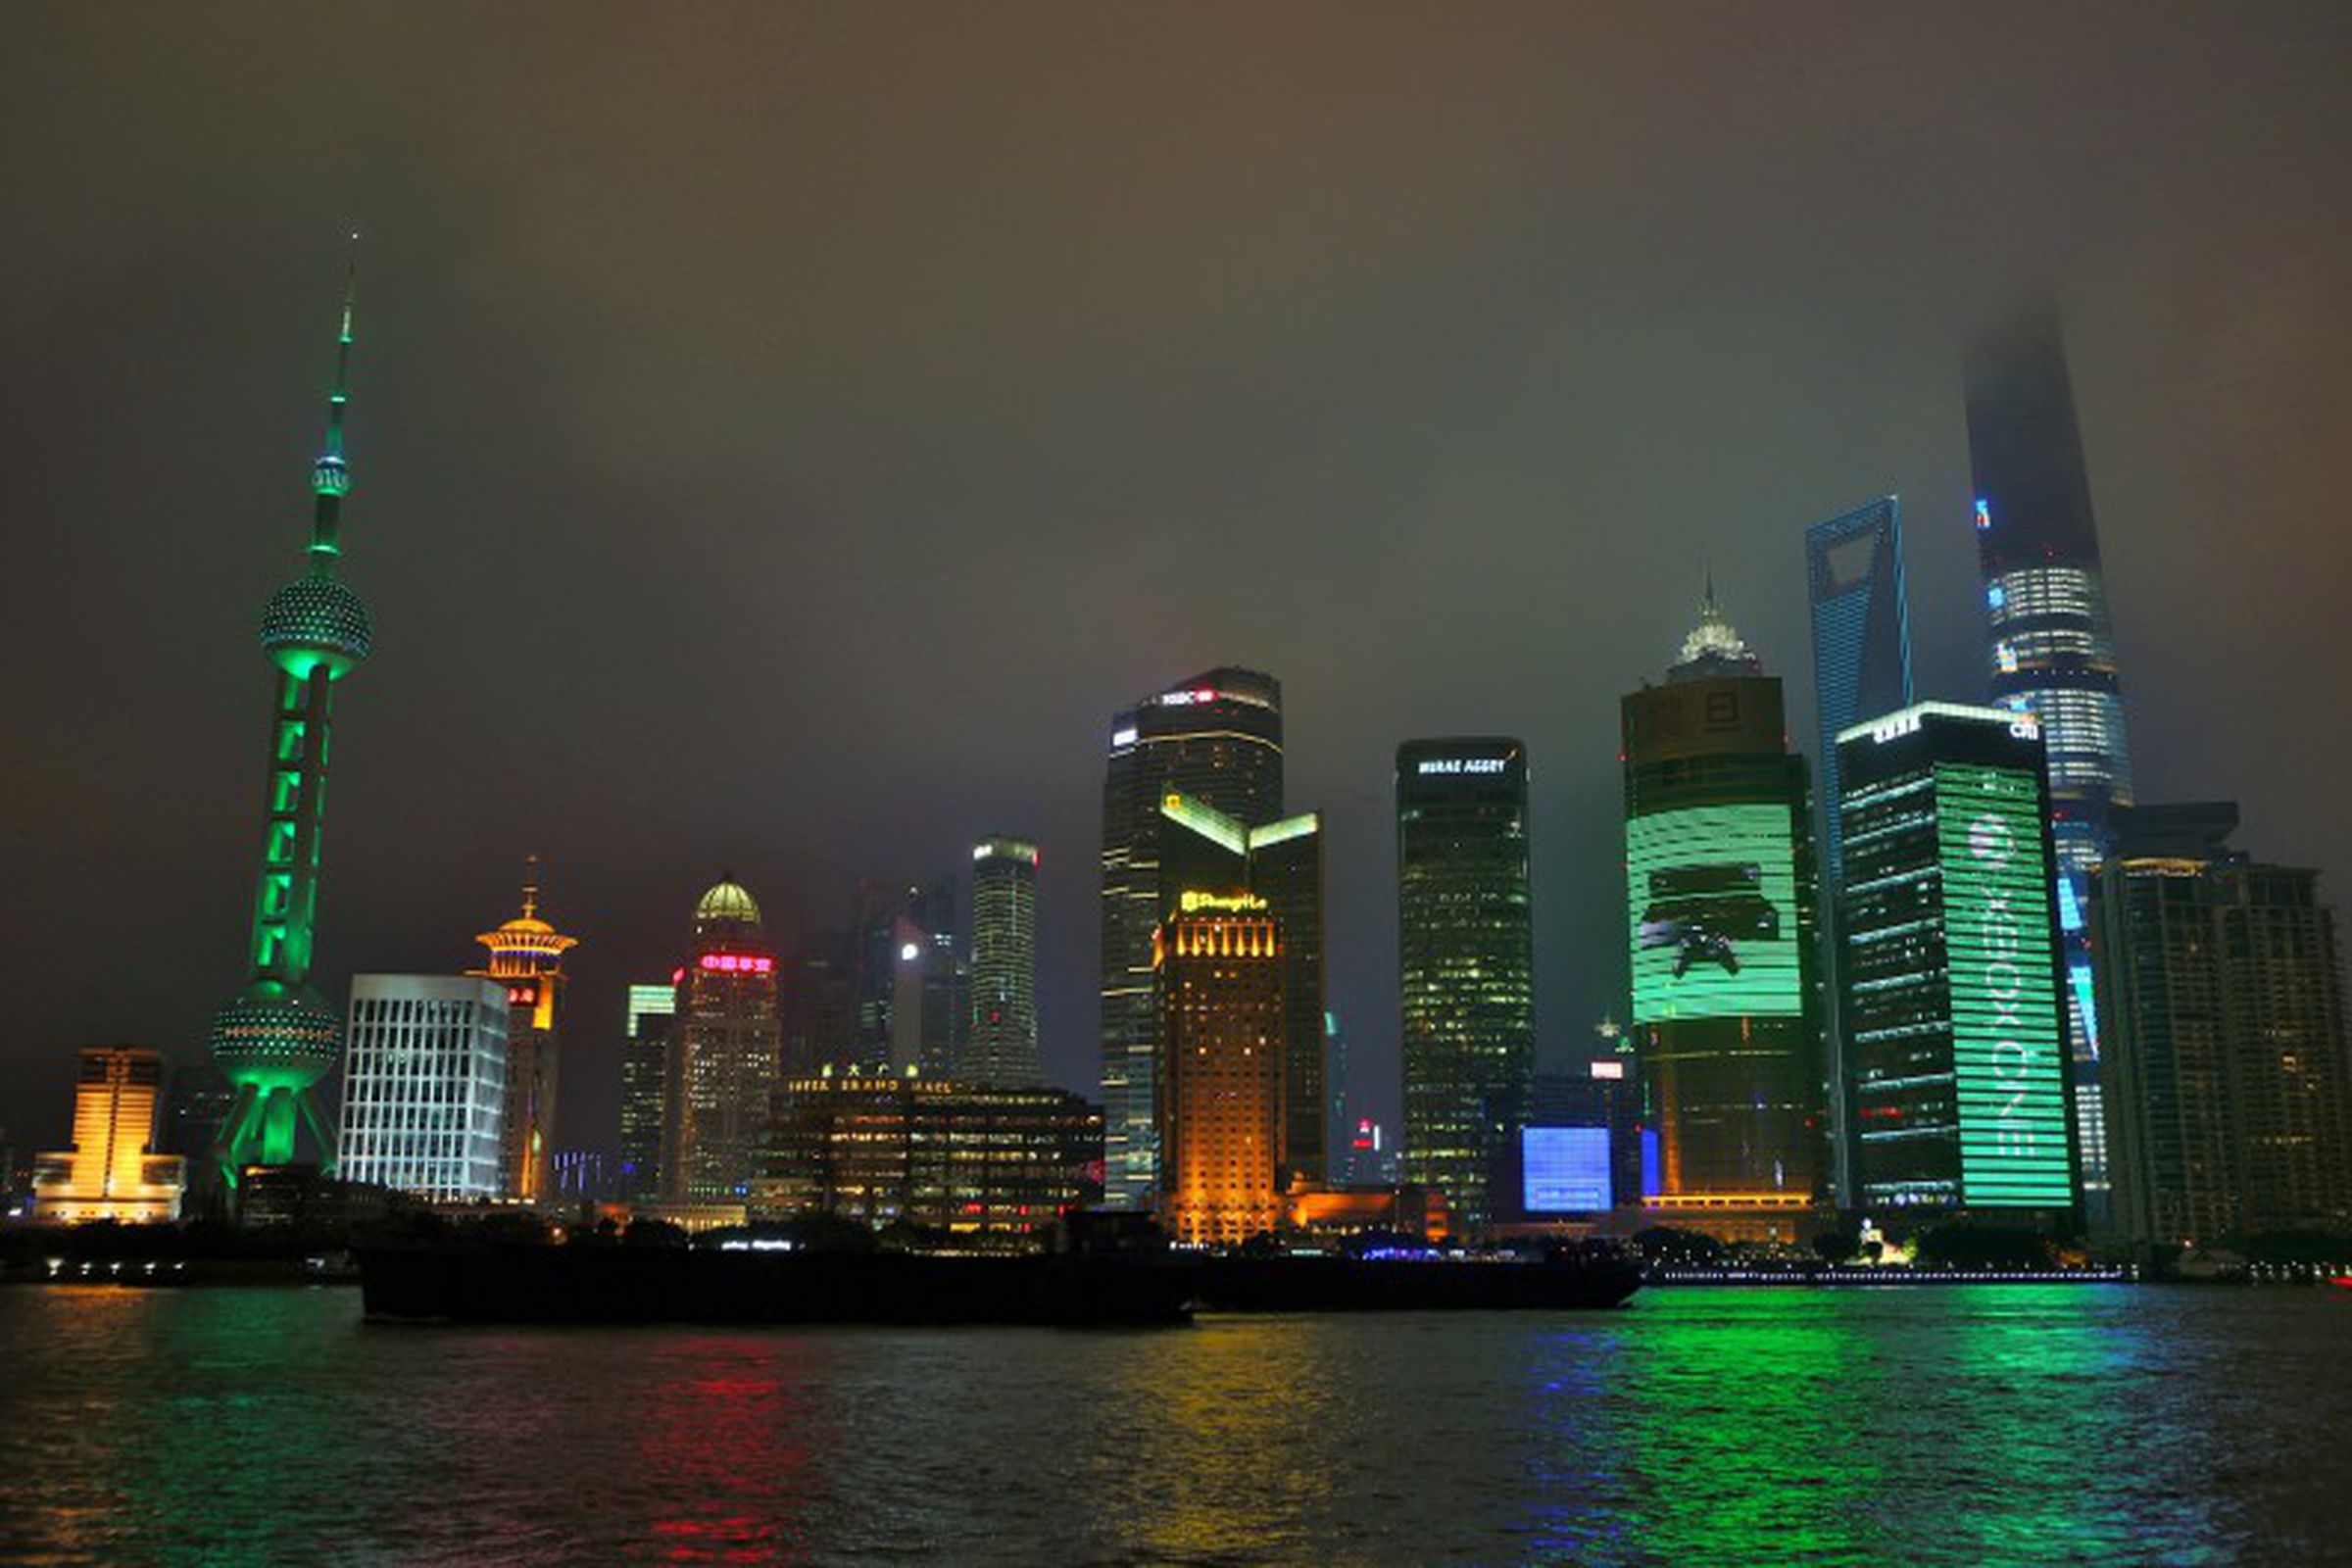 Xbox Shanghai skyline